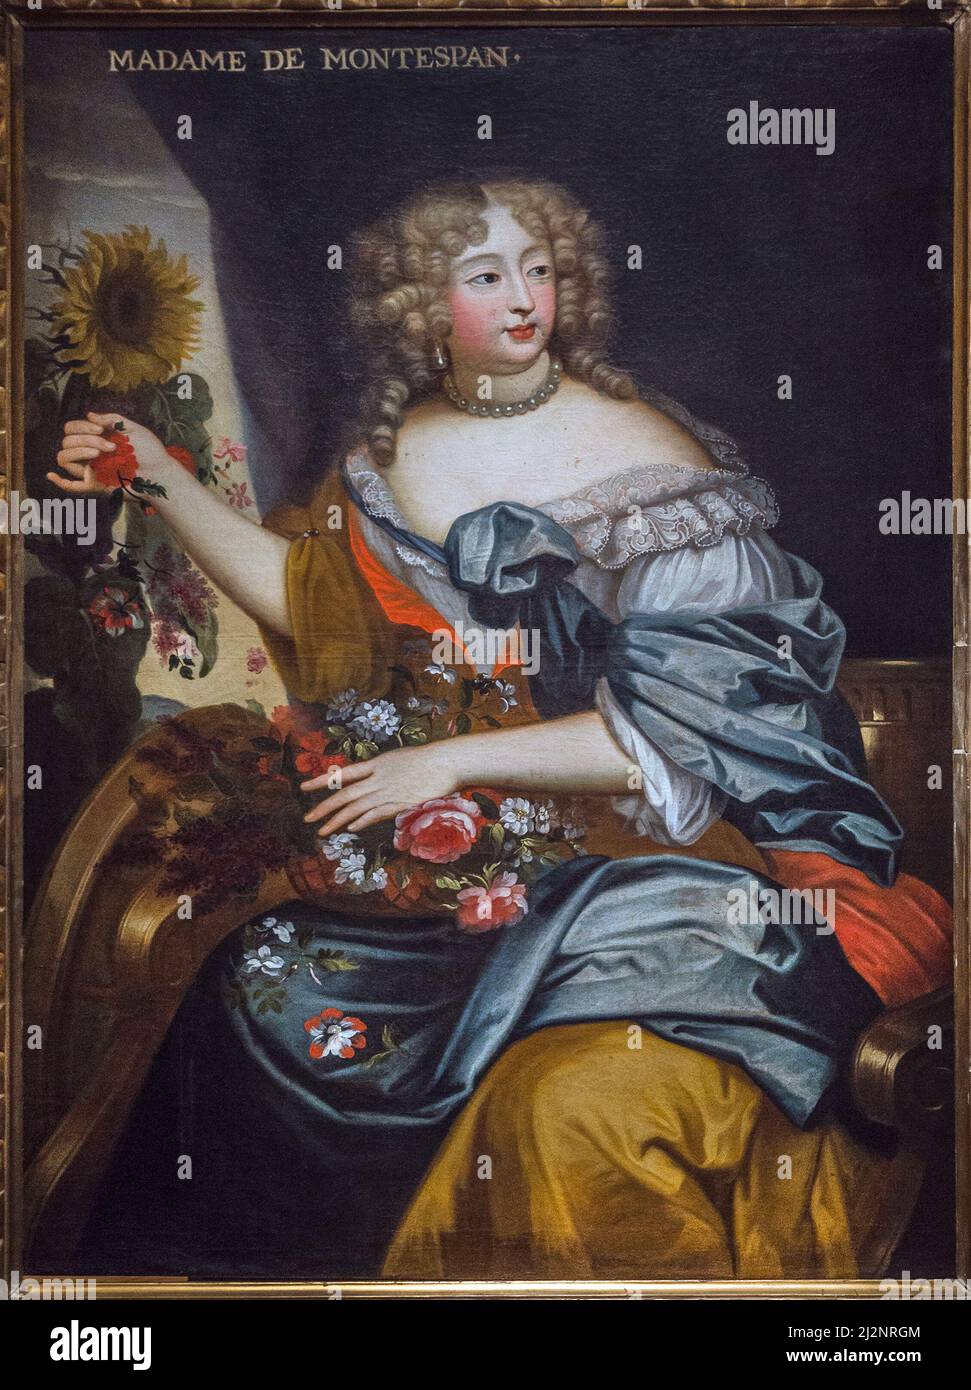 Portrait de Madame de Montespan en flore - Marquise de Montespan - huile sur toile- 17eme siecle - le Mans Musée de Tessé Foto Stock